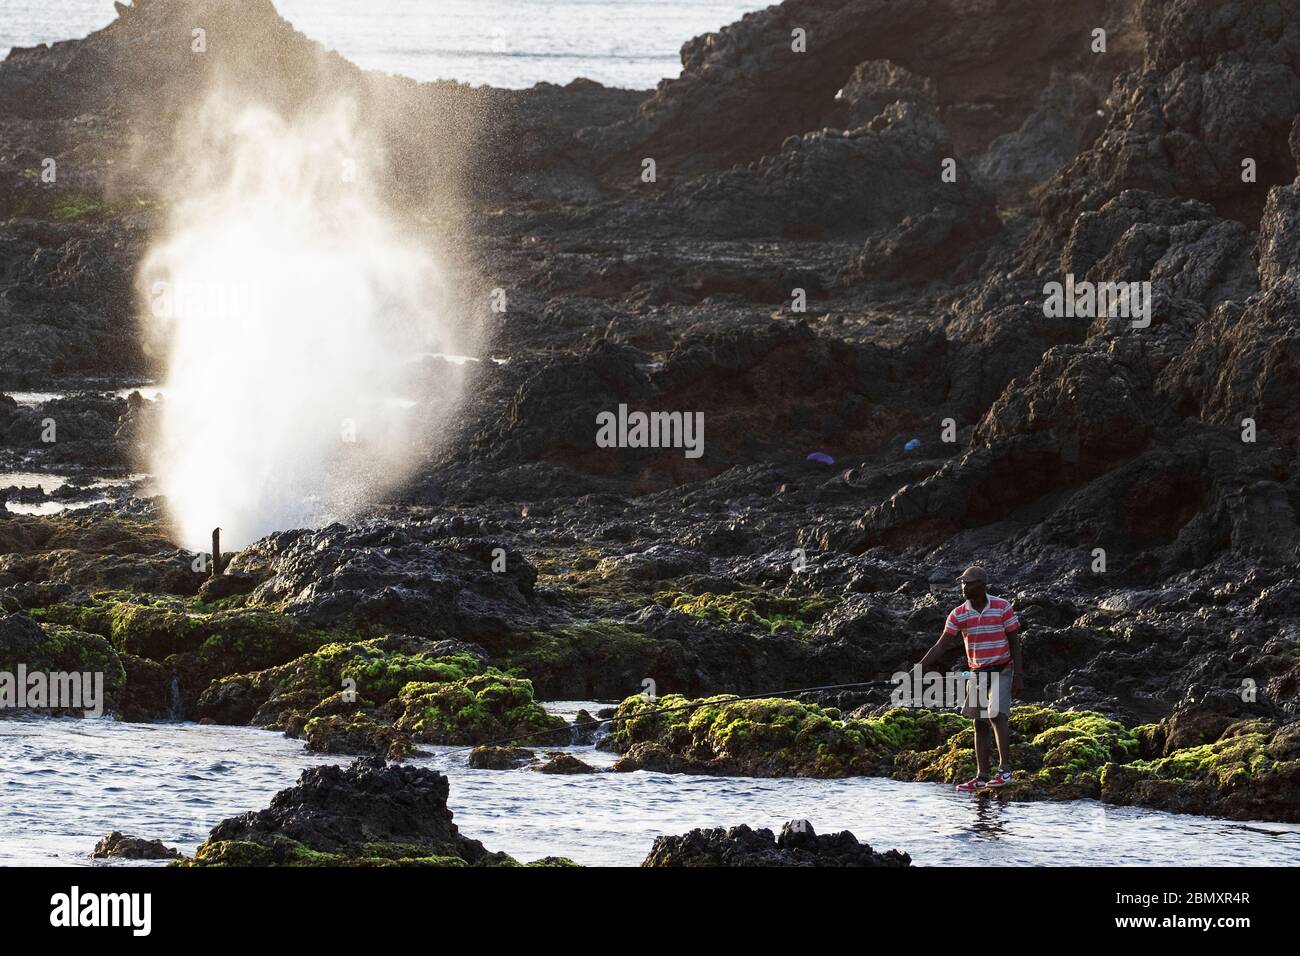 Fischer und Wellen brechen auf vulkanischen Felsen in der Brandung auf der Landzunge Ponta Temerosa auf der Insel Santiago, Kap Verde / Cabo Verde Stockfoto